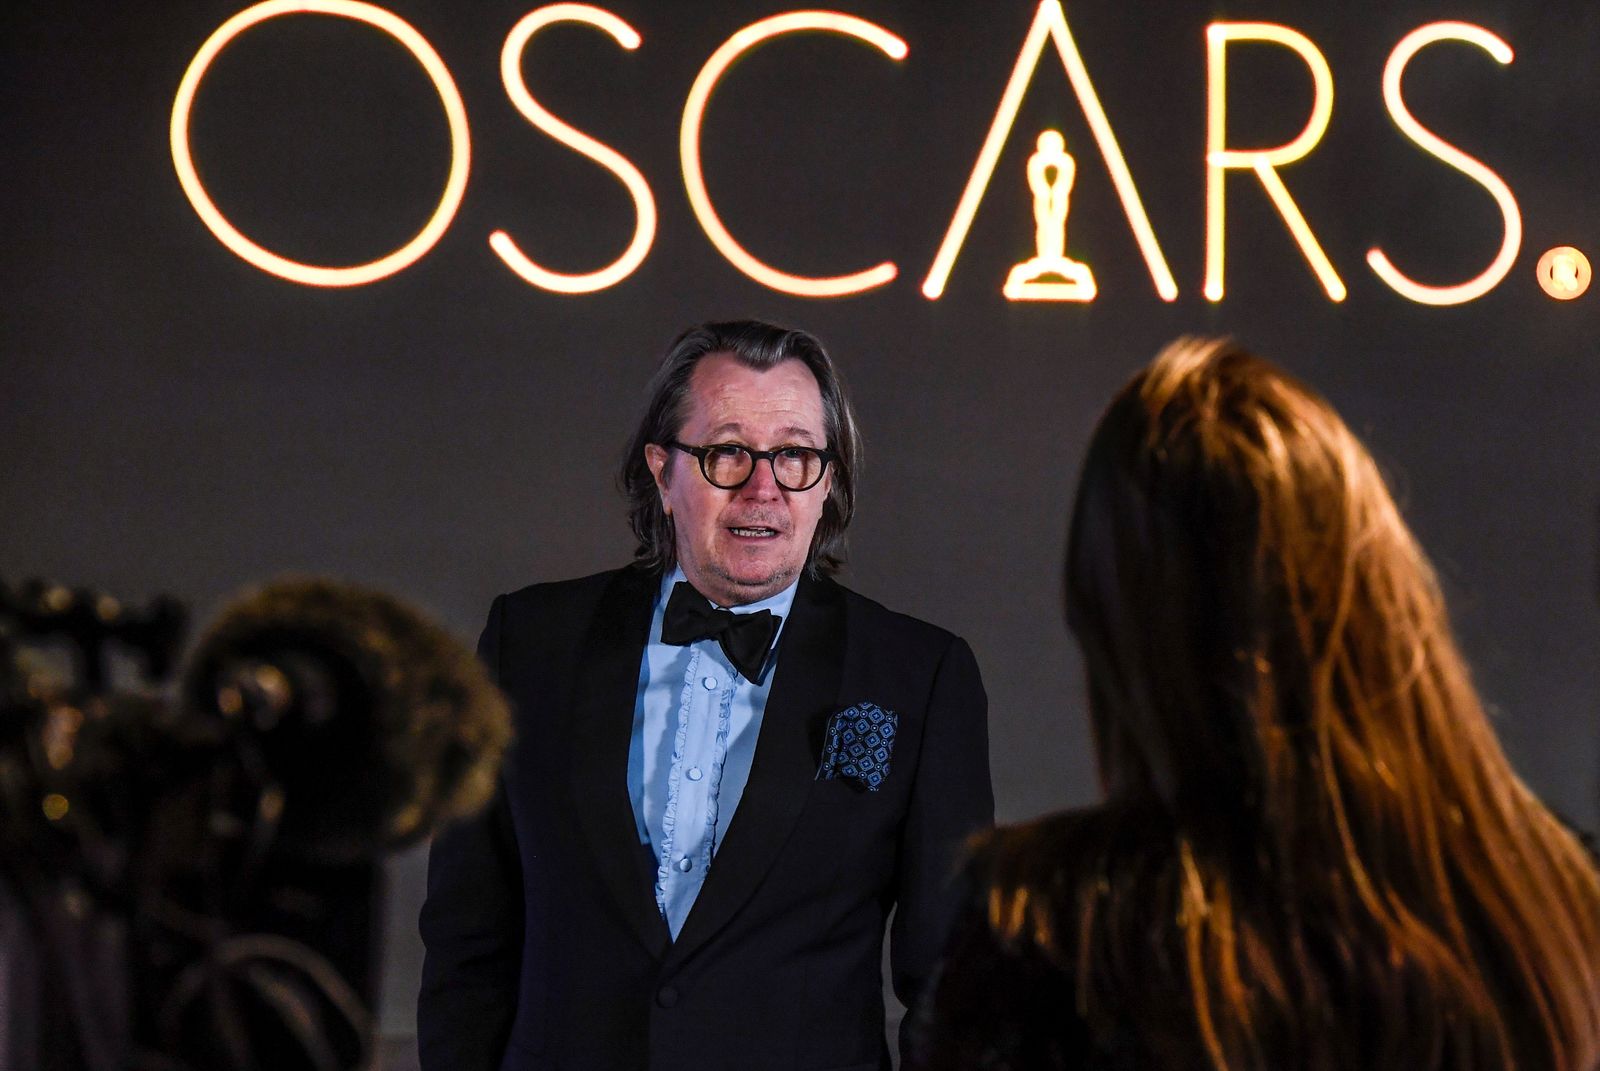  جاري أولدمان في حفل توزيع جوائز الأوسكار في لندن- 25 أبريل 2021. - REUTERS